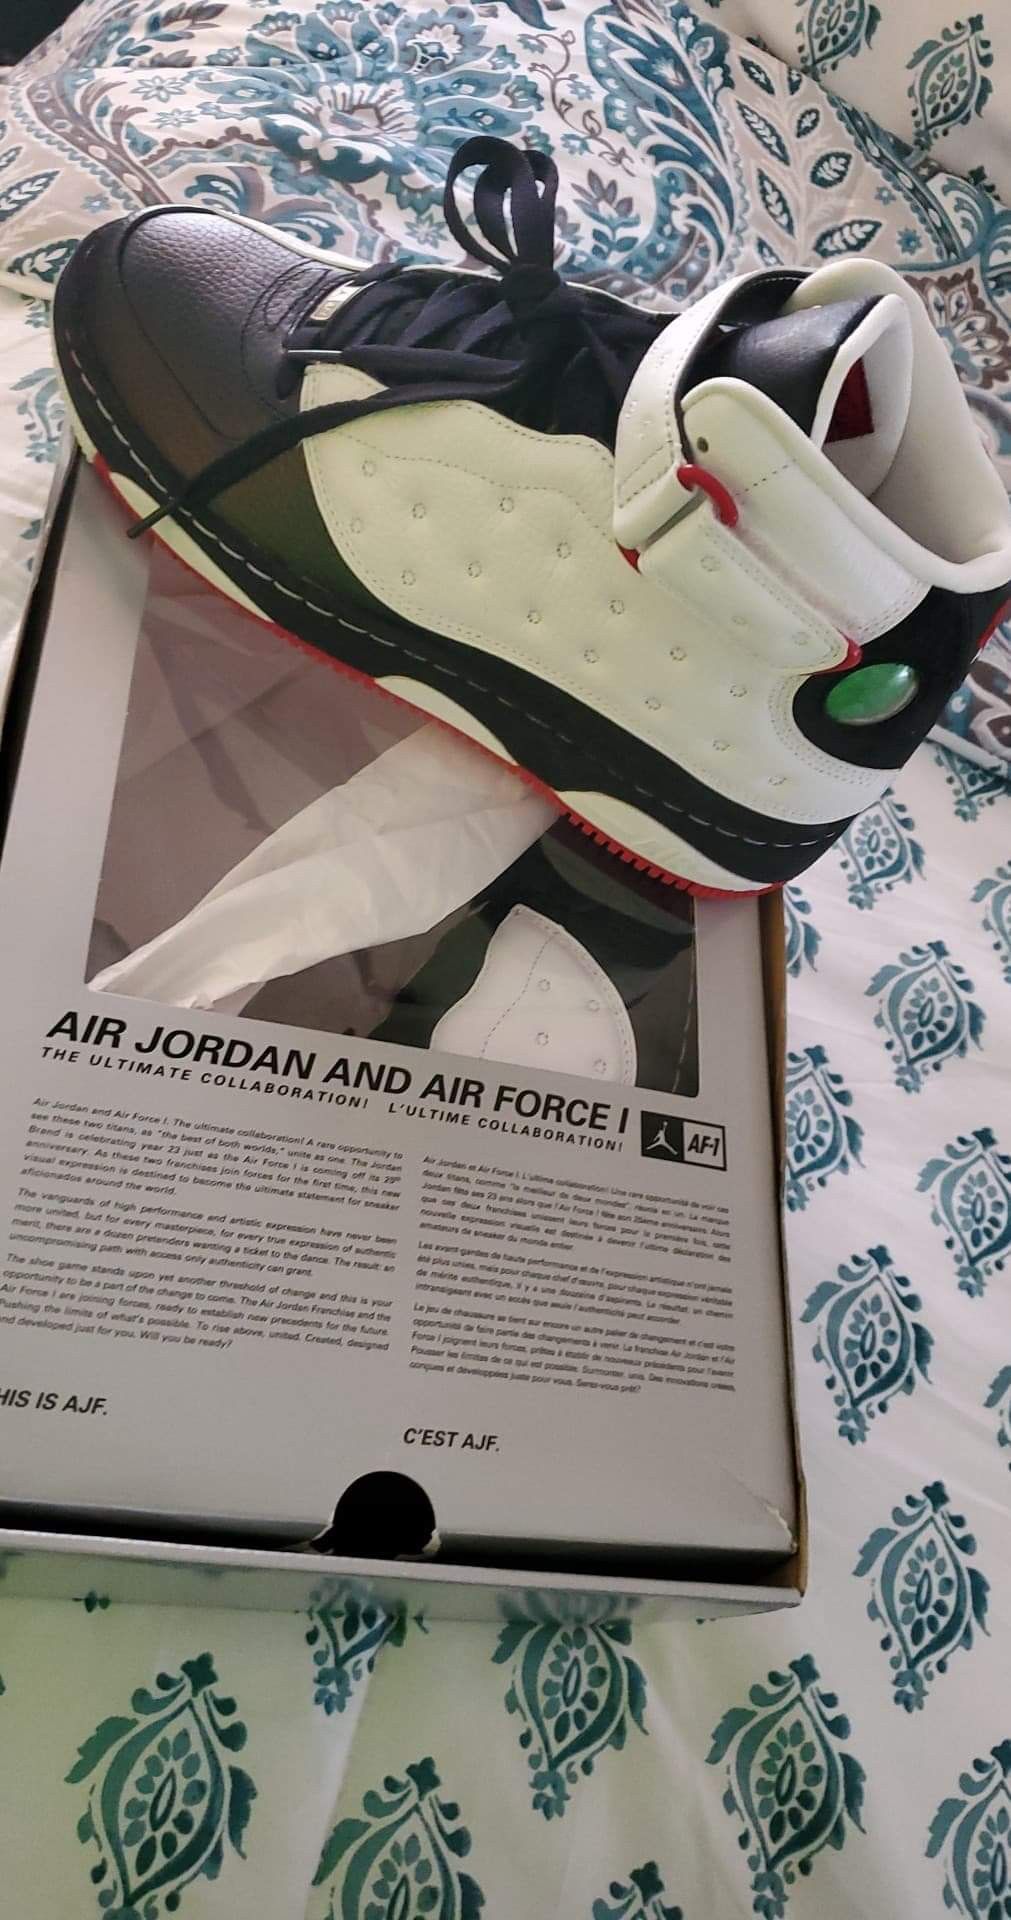 Air Jordan and Air force 1